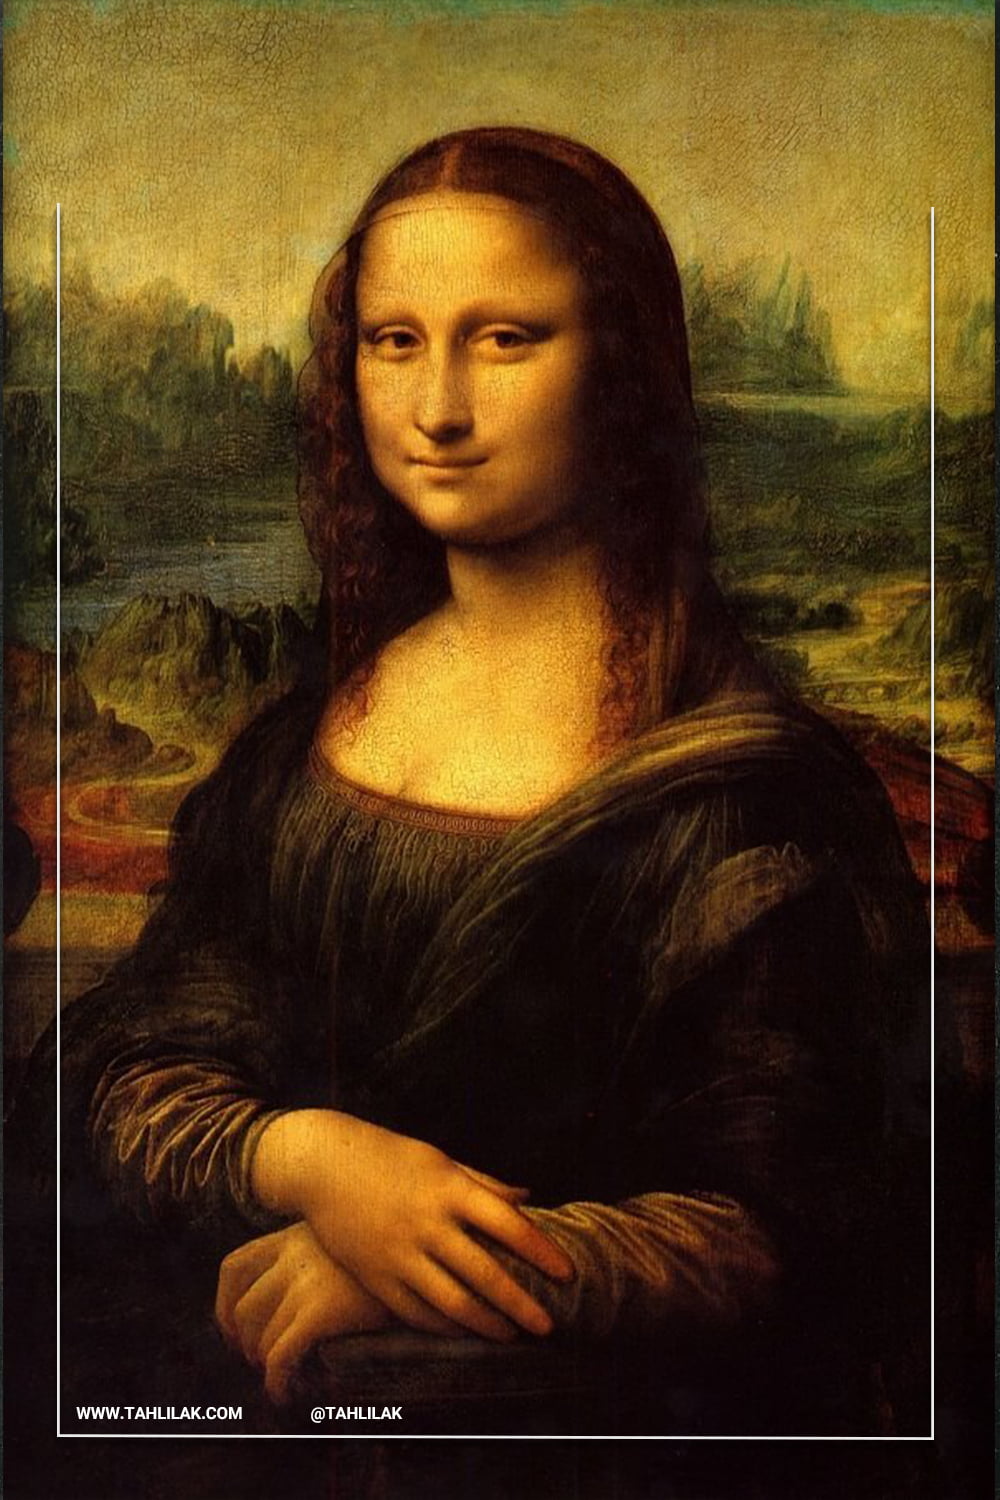 معروف ترین نقاشی های جهان معروف ترین نقاشی های جهان «مونالیزا» لئوناردو داوینچی